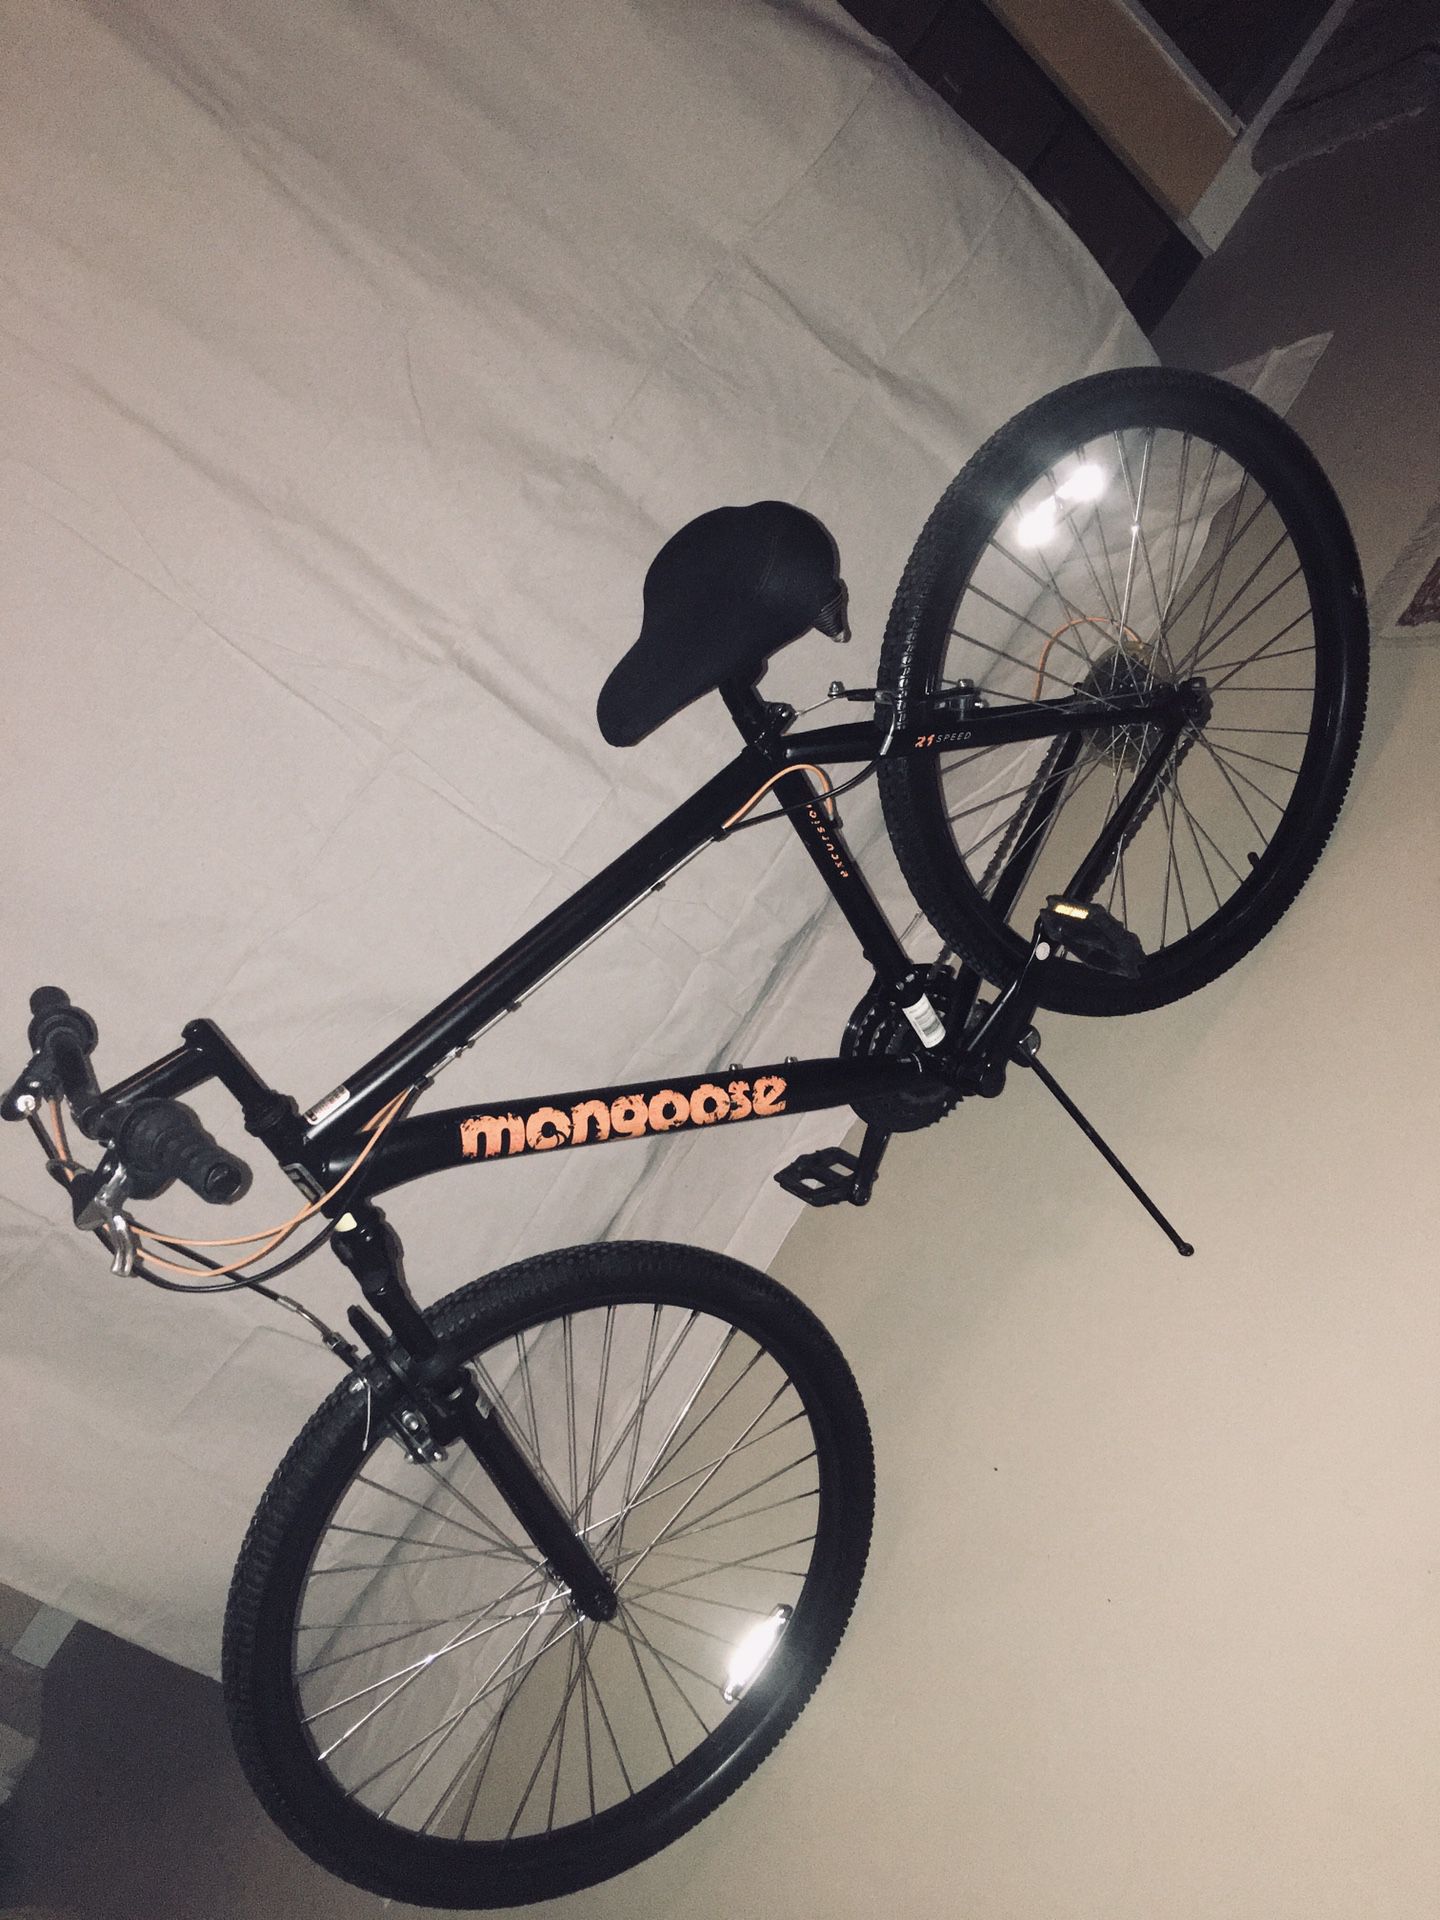 Men’s Mongoose Excursion Mountain Bike ... 27.5” Wheels, 21-Speed, Element Racing Shocks